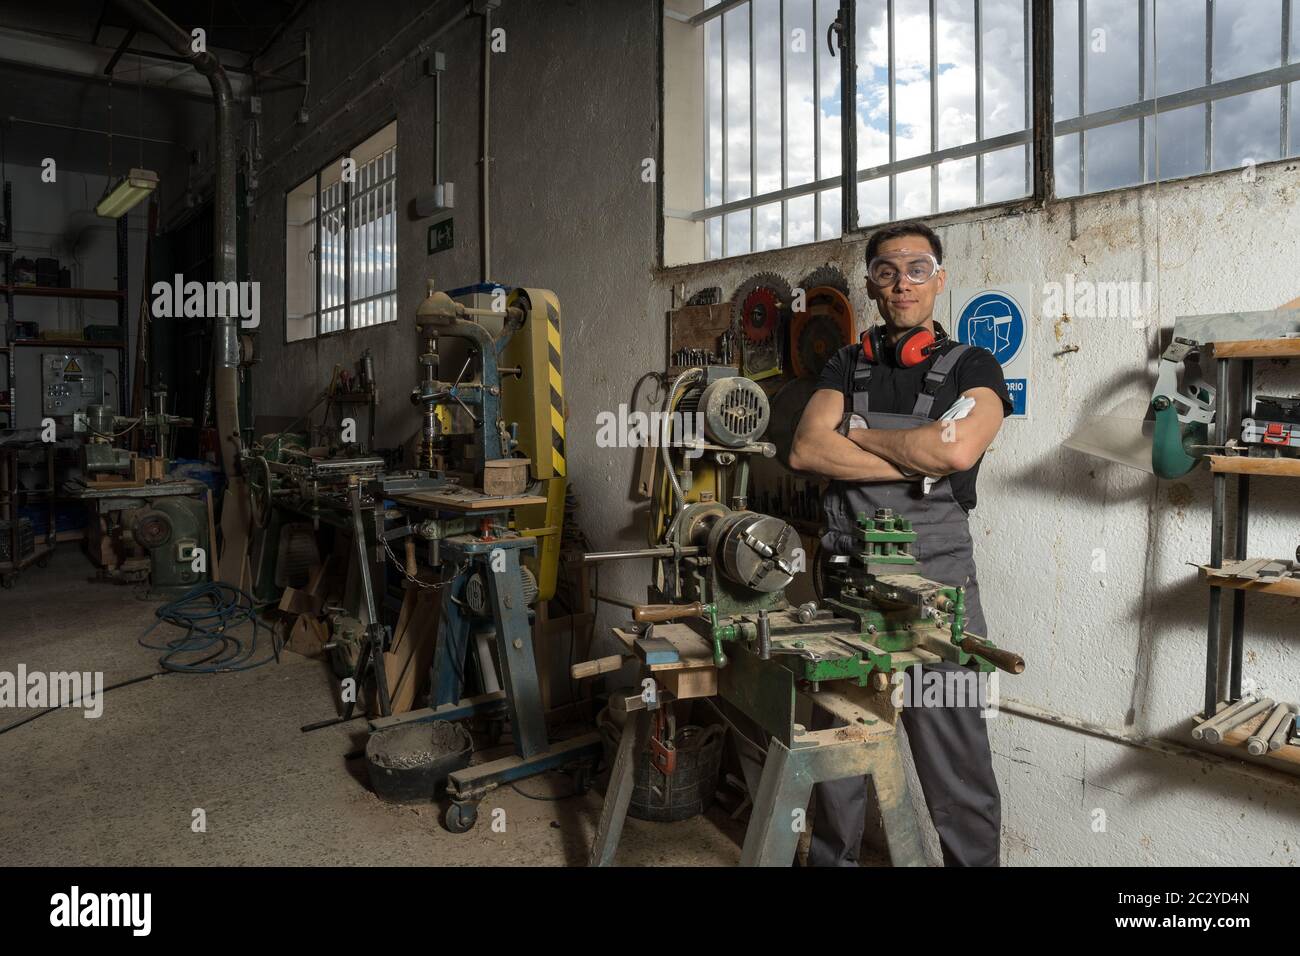 Travailleur debout avec un équipement de protection regardant la caméra sourire dans une usine. Photo intermédiaire. Banque D'Images